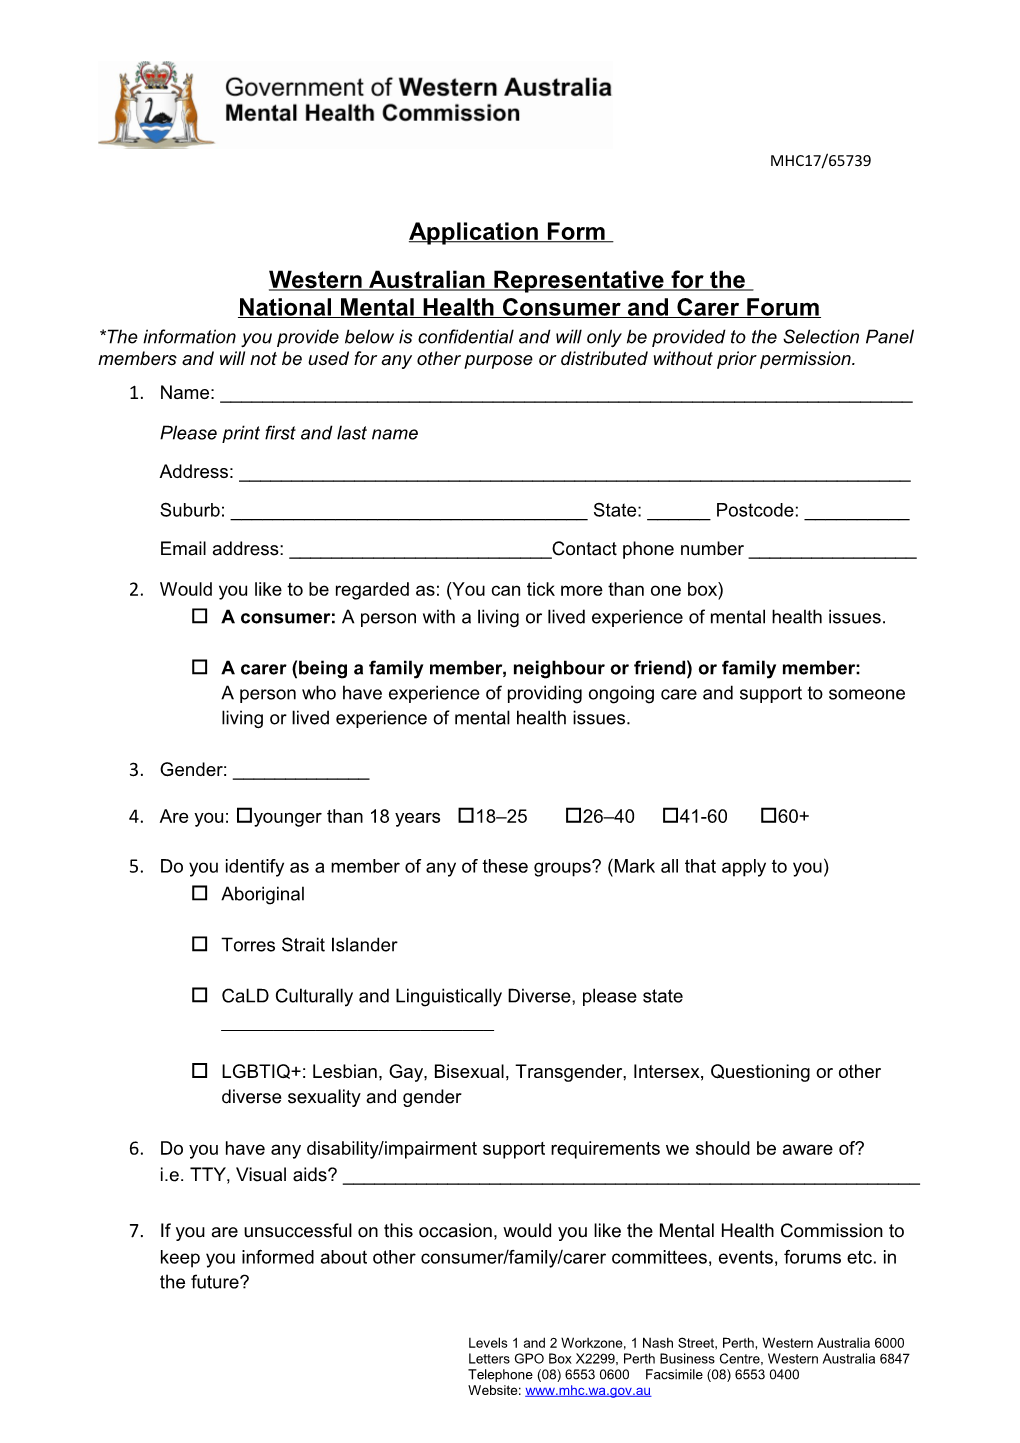 Application Form Consumer Family Carer Reps